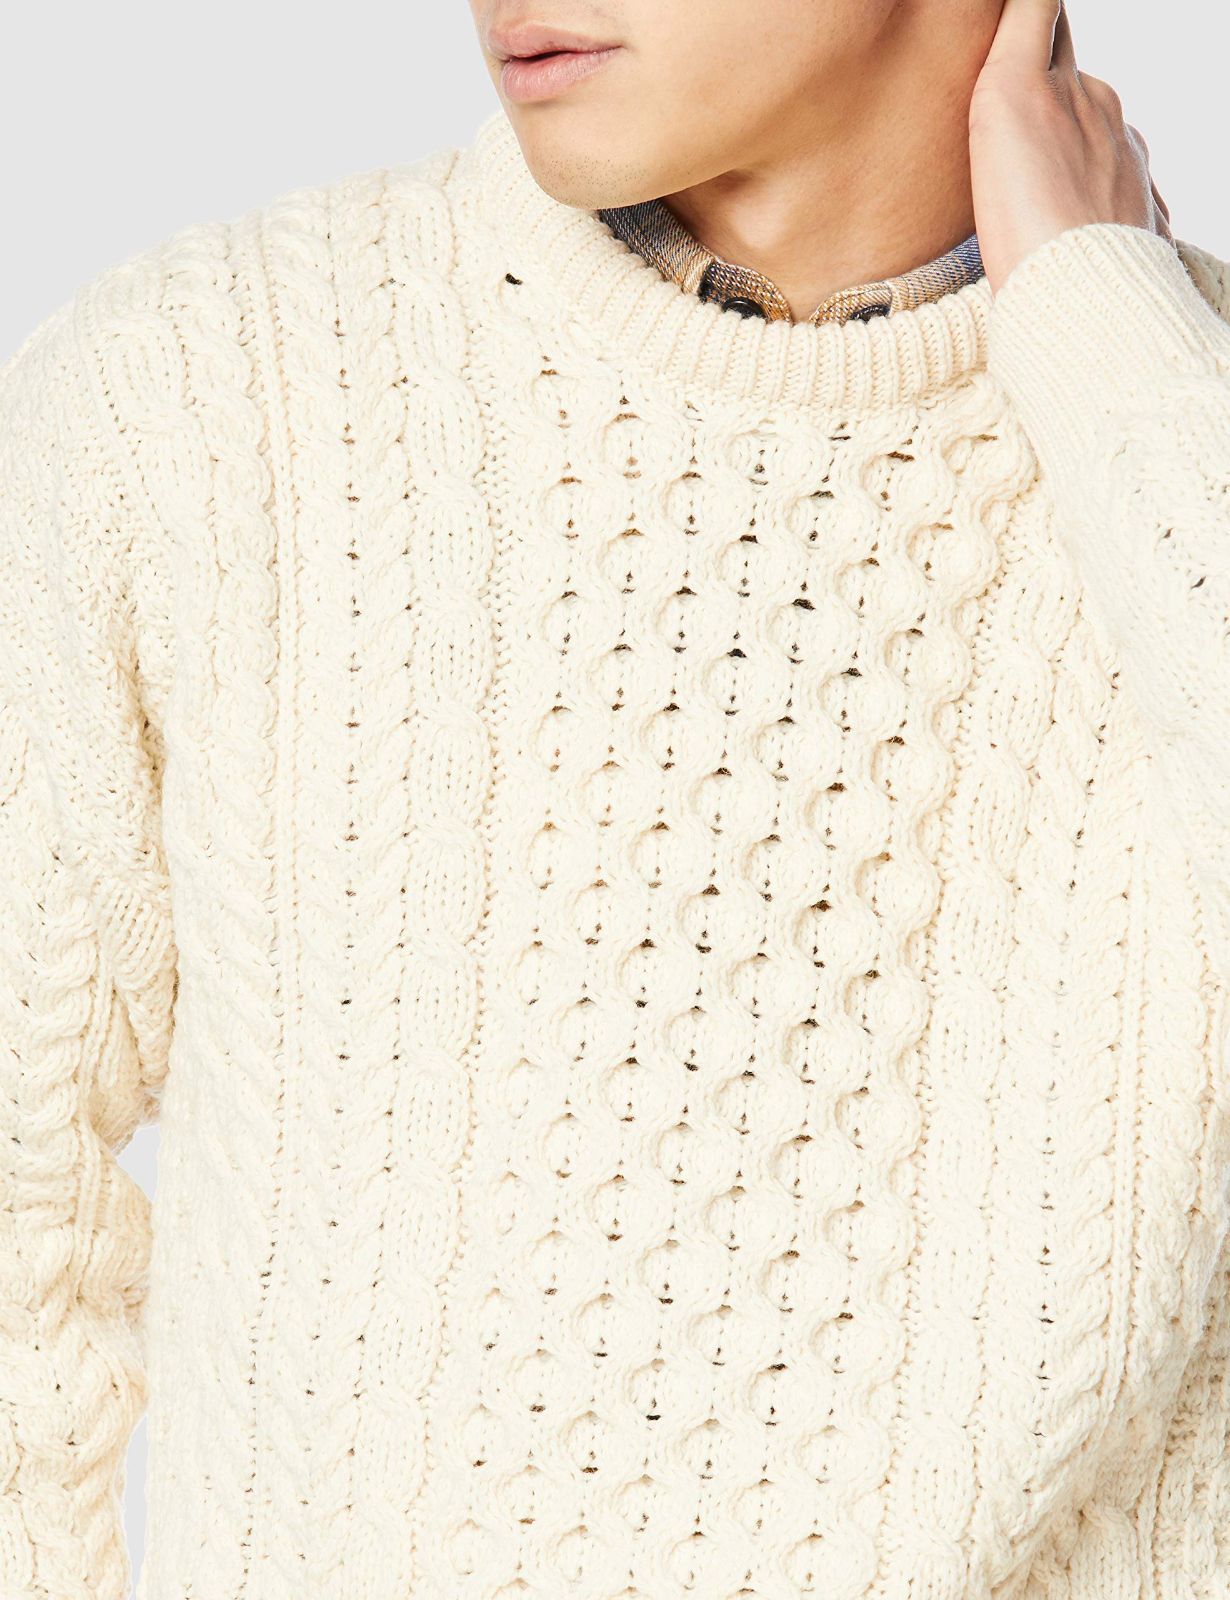 アランウーレンミルズ セーター A823 Traditional Aran Sweater メンズ